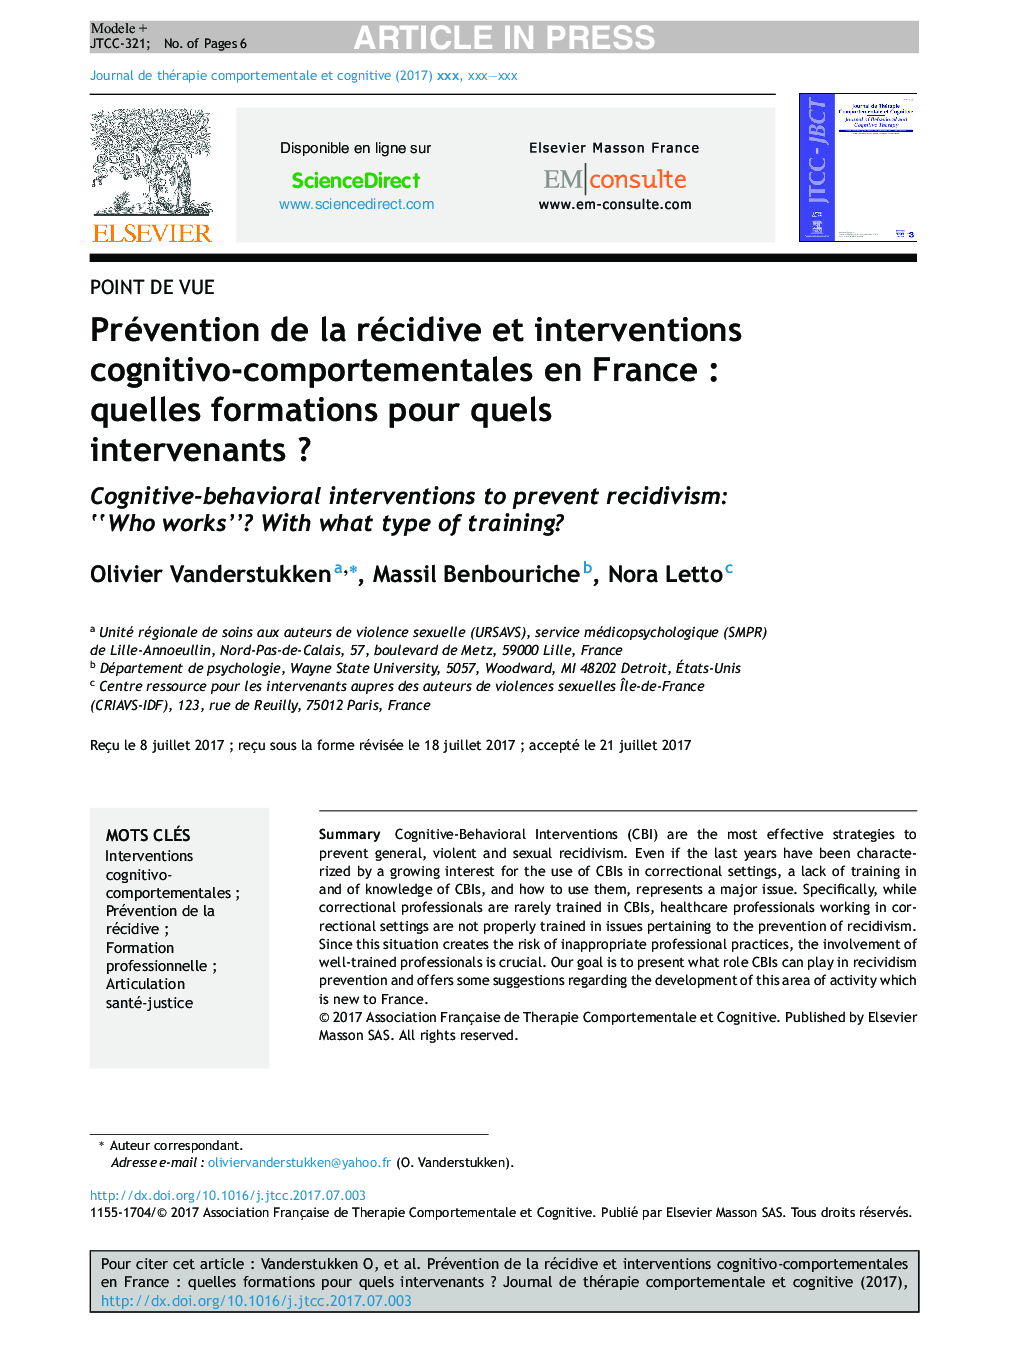 Prévention de la récidive et interventions cognitivo-comportementales en FranceÂ : quelles formations pour quels intervenantsÂ ?